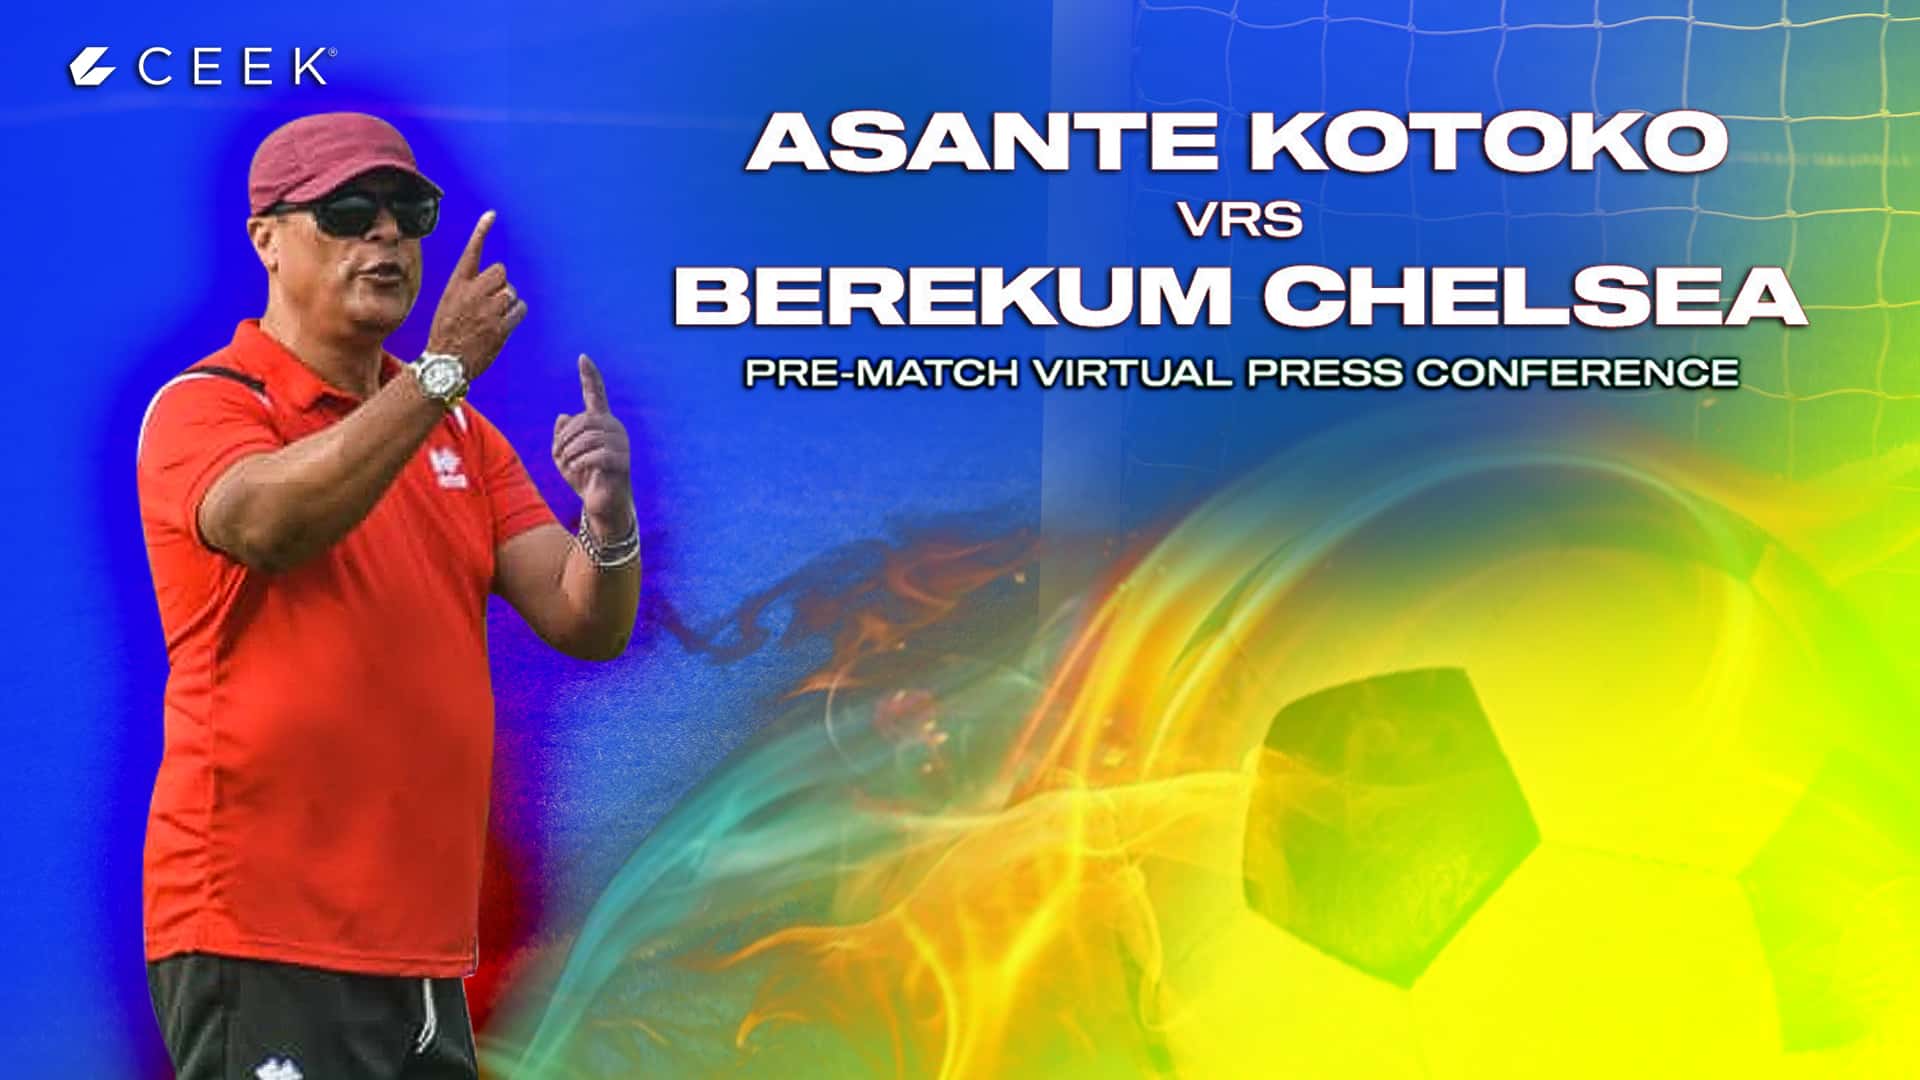 Asante Kotoko Pre-match Press Conference with Coach Mariano Barreto